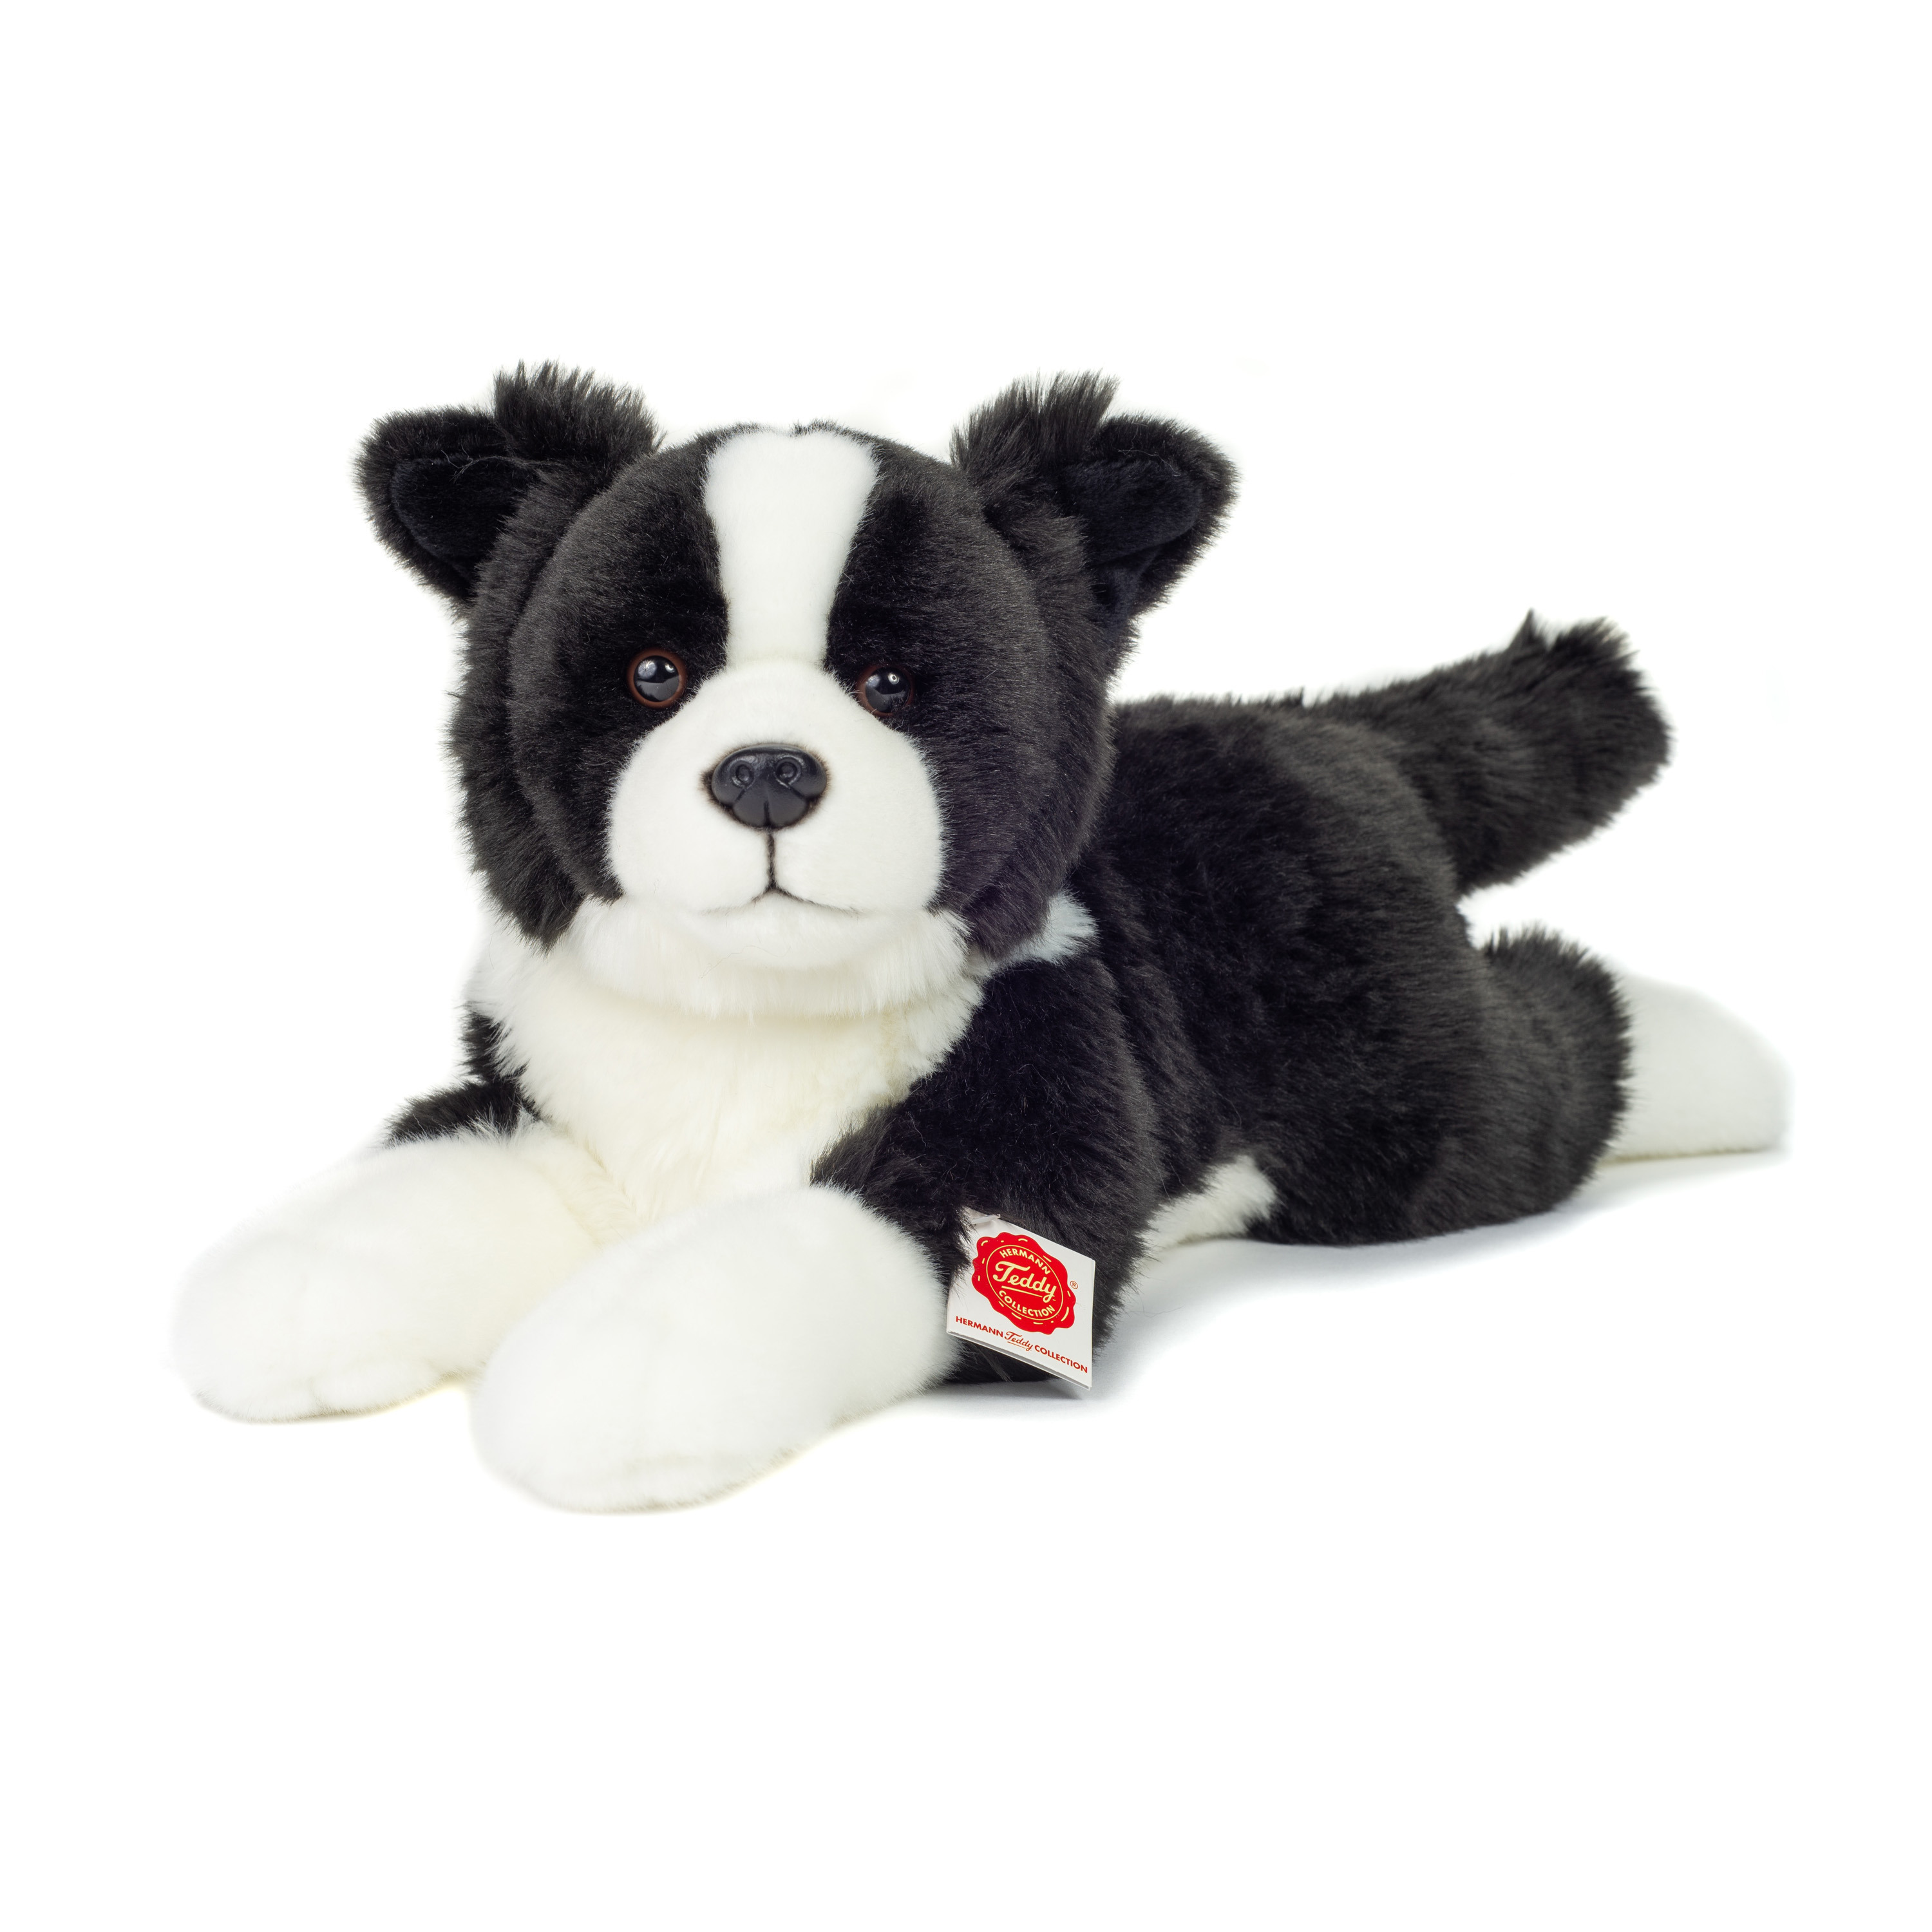 Hermann Teddy Knuffeldier hond Border Collie - zachte pluche stof - premium kwaliteit knuffels - zwart/wit - 45 cm